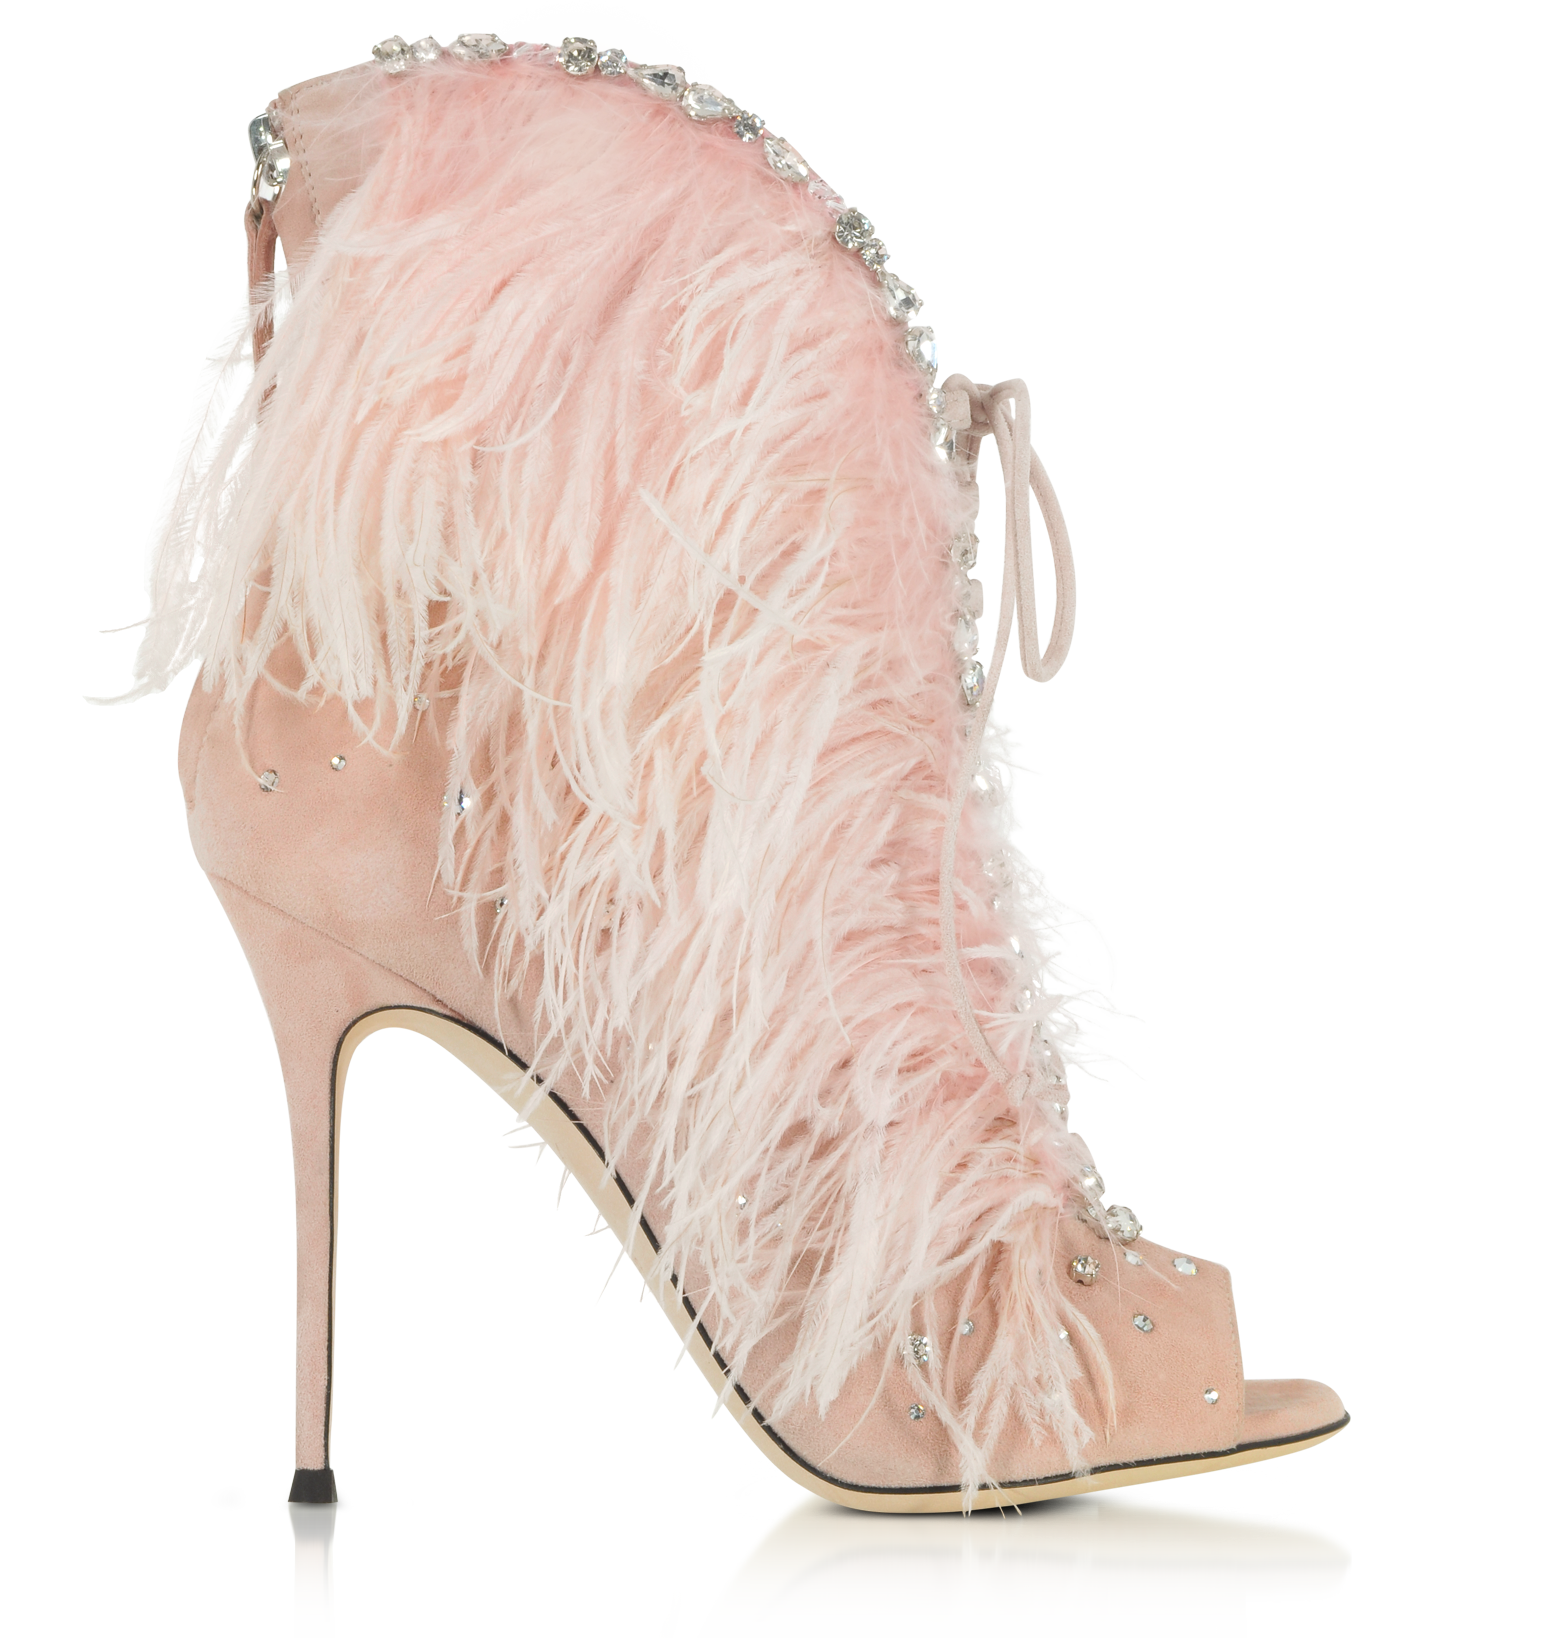 giuseppe feather heels